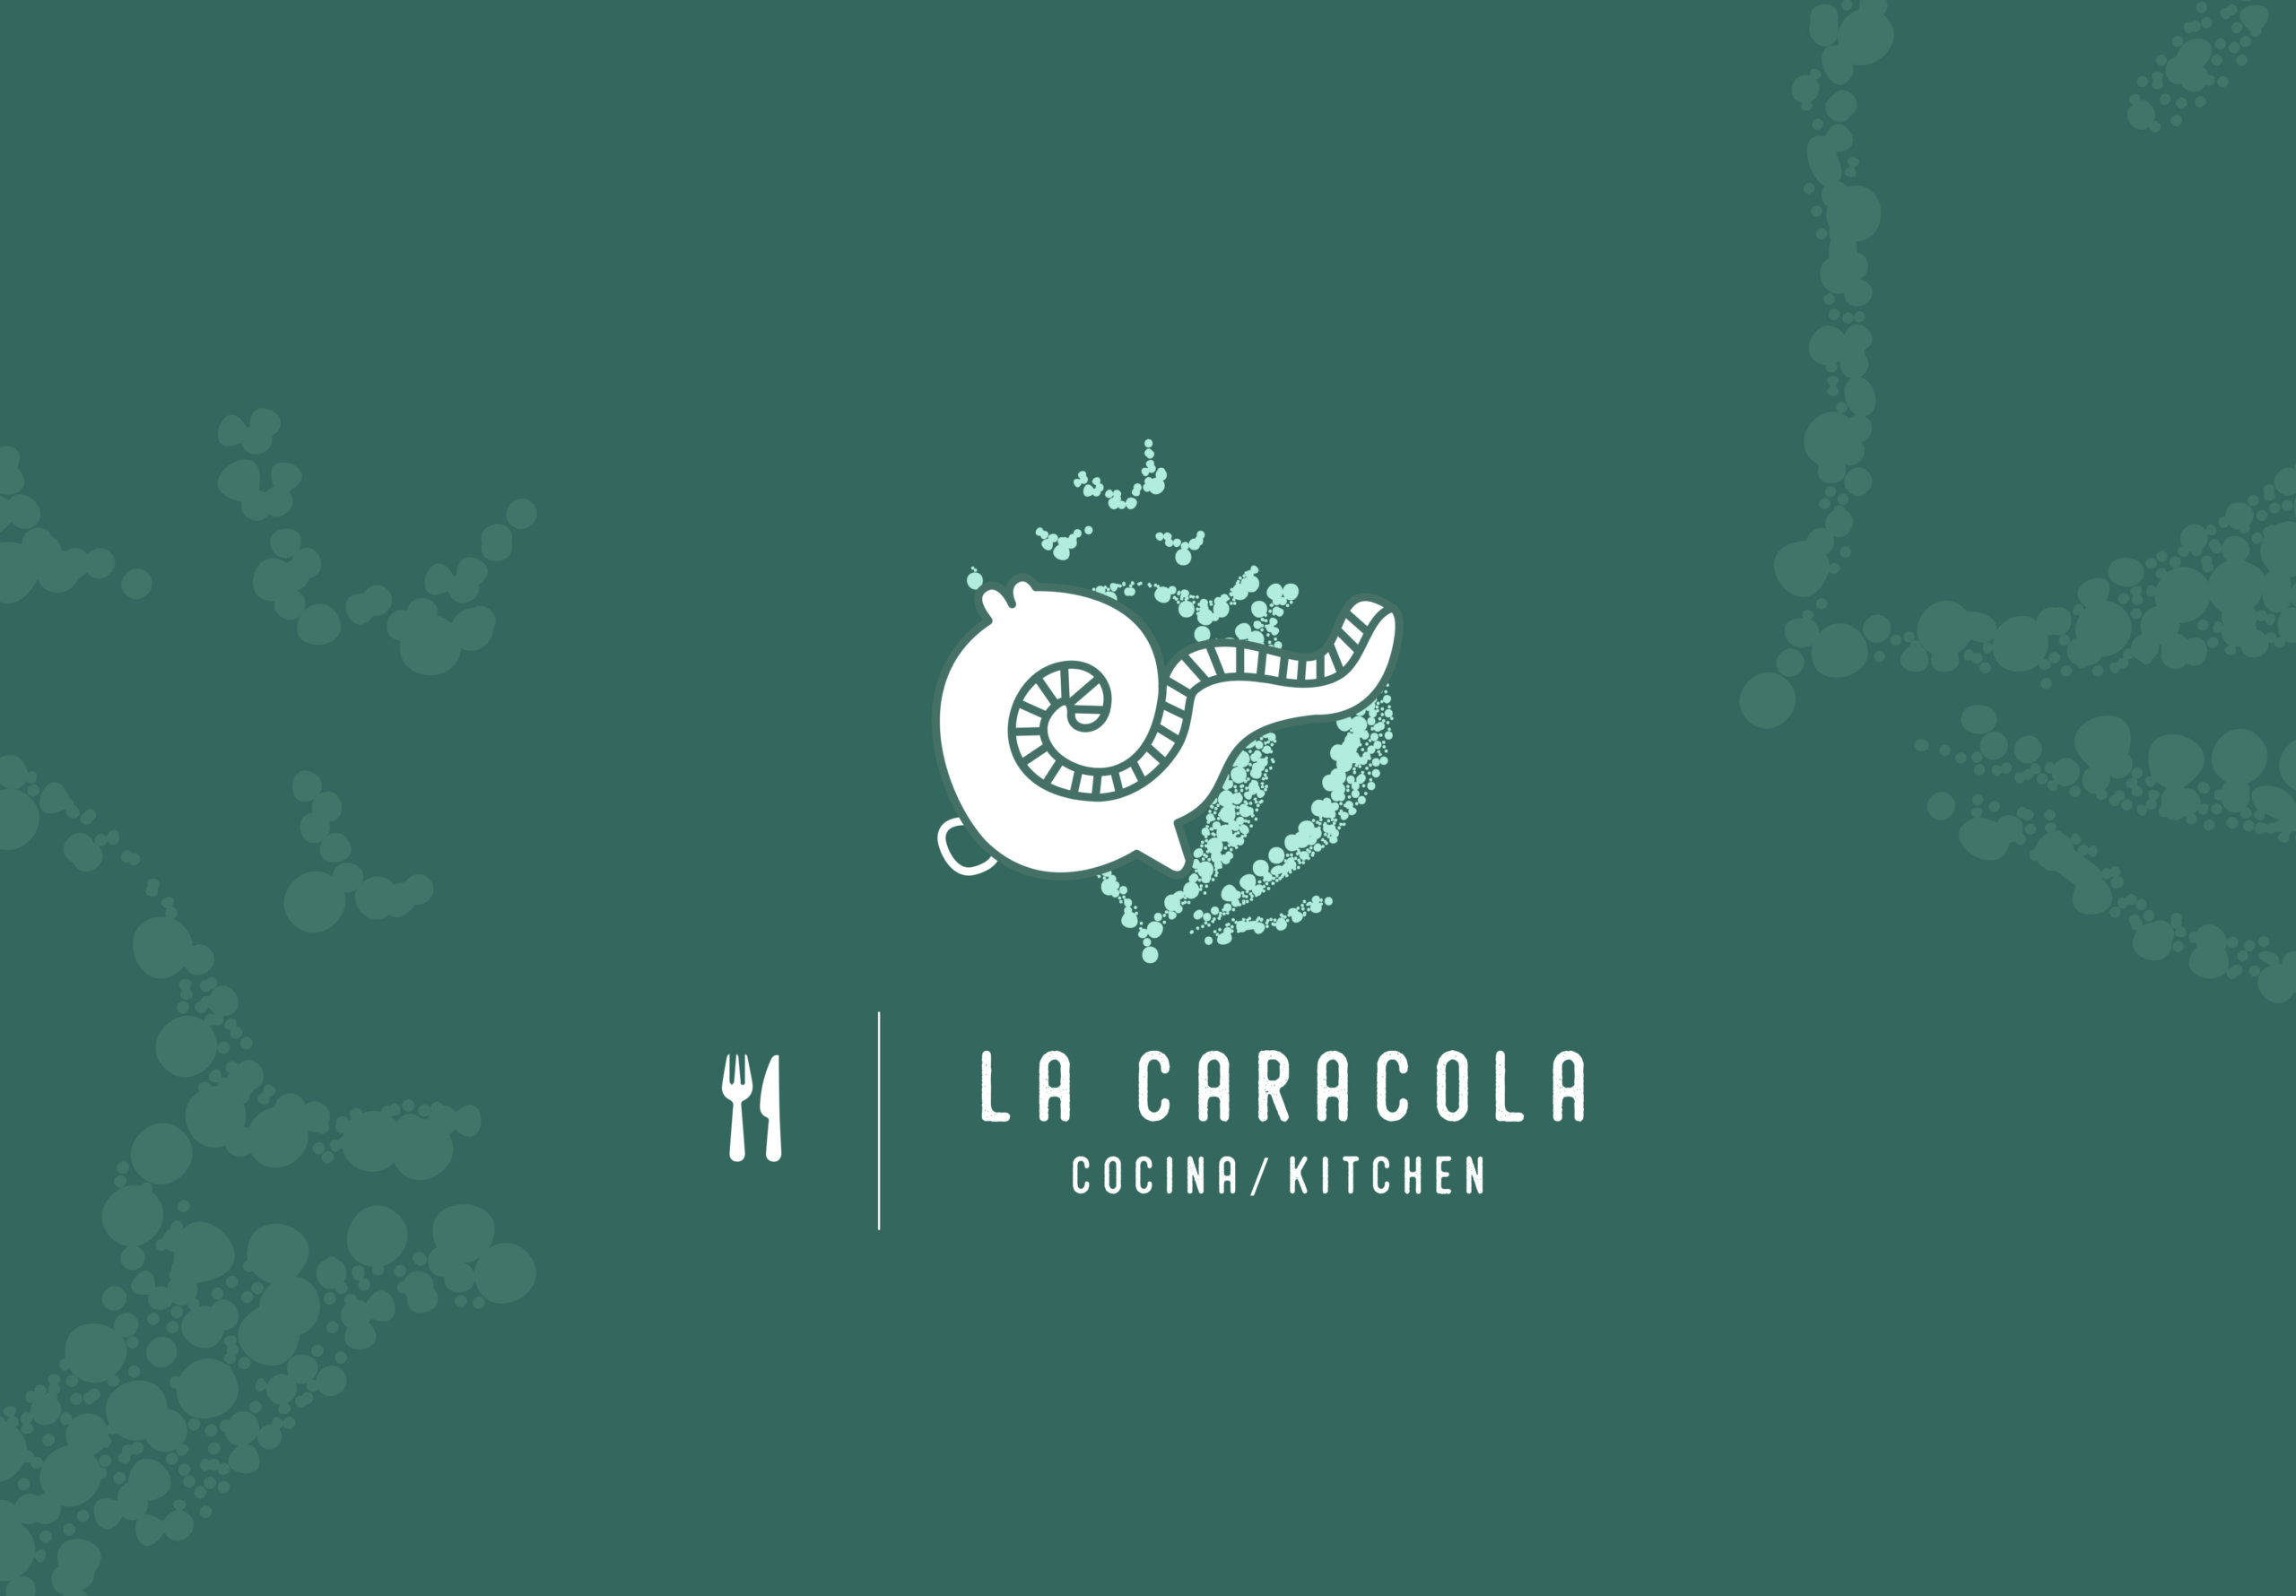 Villas Cozumel - La caracola, logo blanco con verde, Cozumel